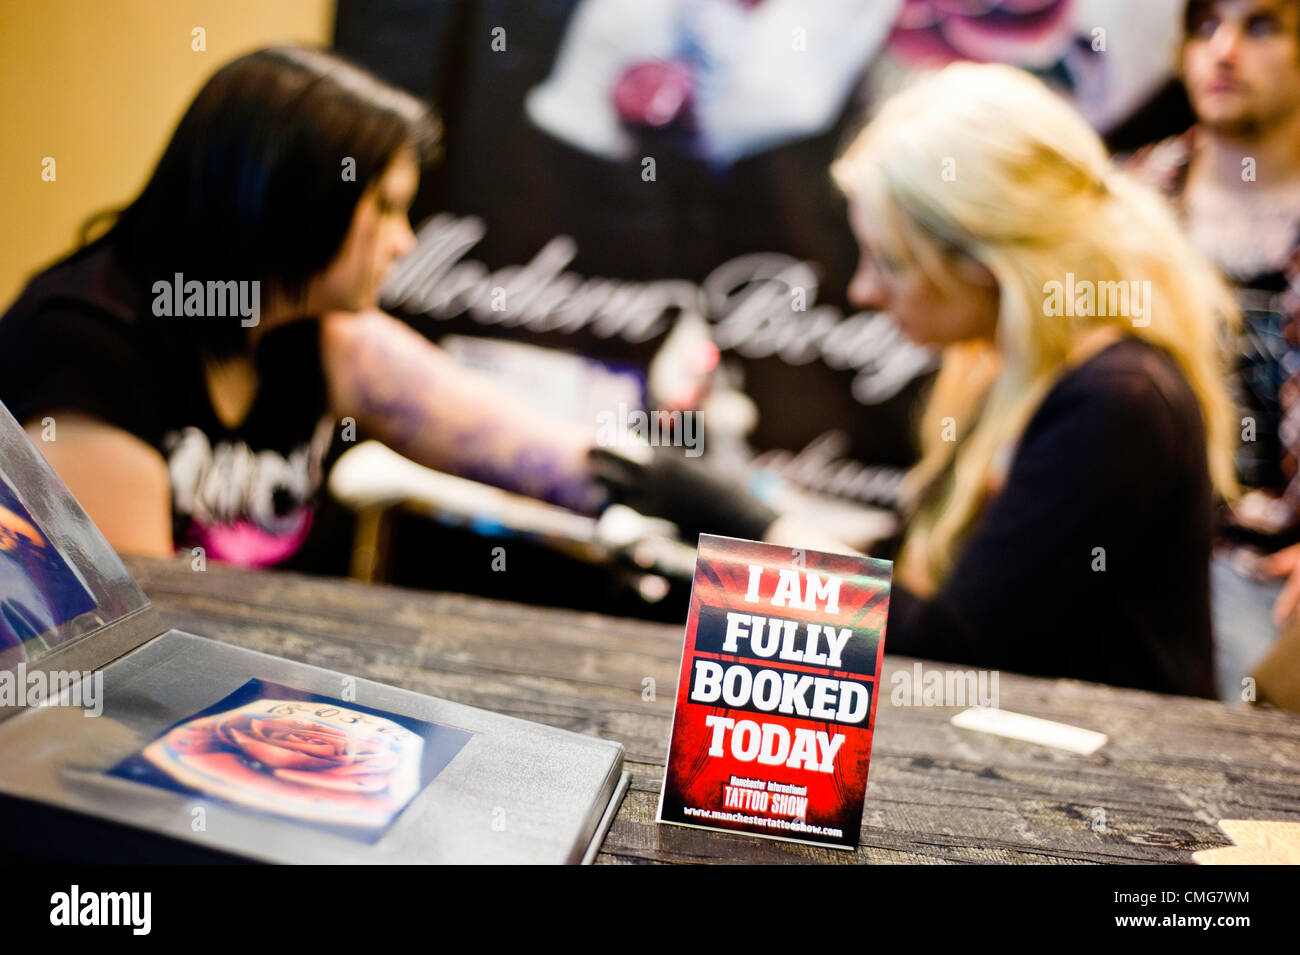 Manchester, UK - 4. August 2012: ein Schild mit der Aufschrift "Ich bin heute ausgebucht" steht auf dem Tisch des Künstlers während der Manchester-Tattoo-Show, eine der beliebtesten Konventionen des Vereinigten Königreichs tattoo Gemeinschaft. Stockfoto